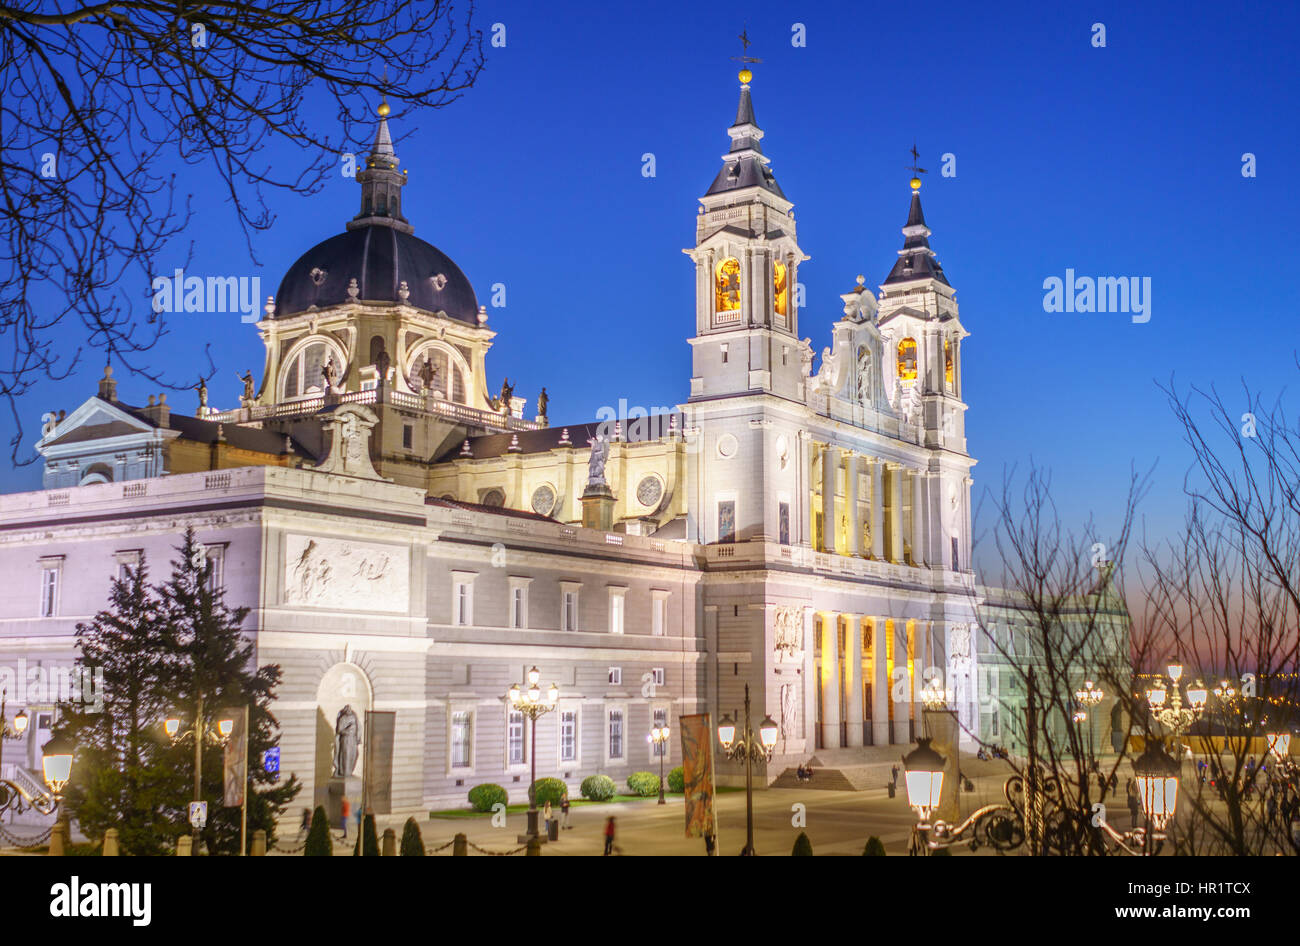 La cattedrale di Almudena è la cattedrale di Madrid, Spagna, e si tratta di un moderno edificio concluso nel 1993. Si tratta di una delle attrazioni della citta'. Foto Stock